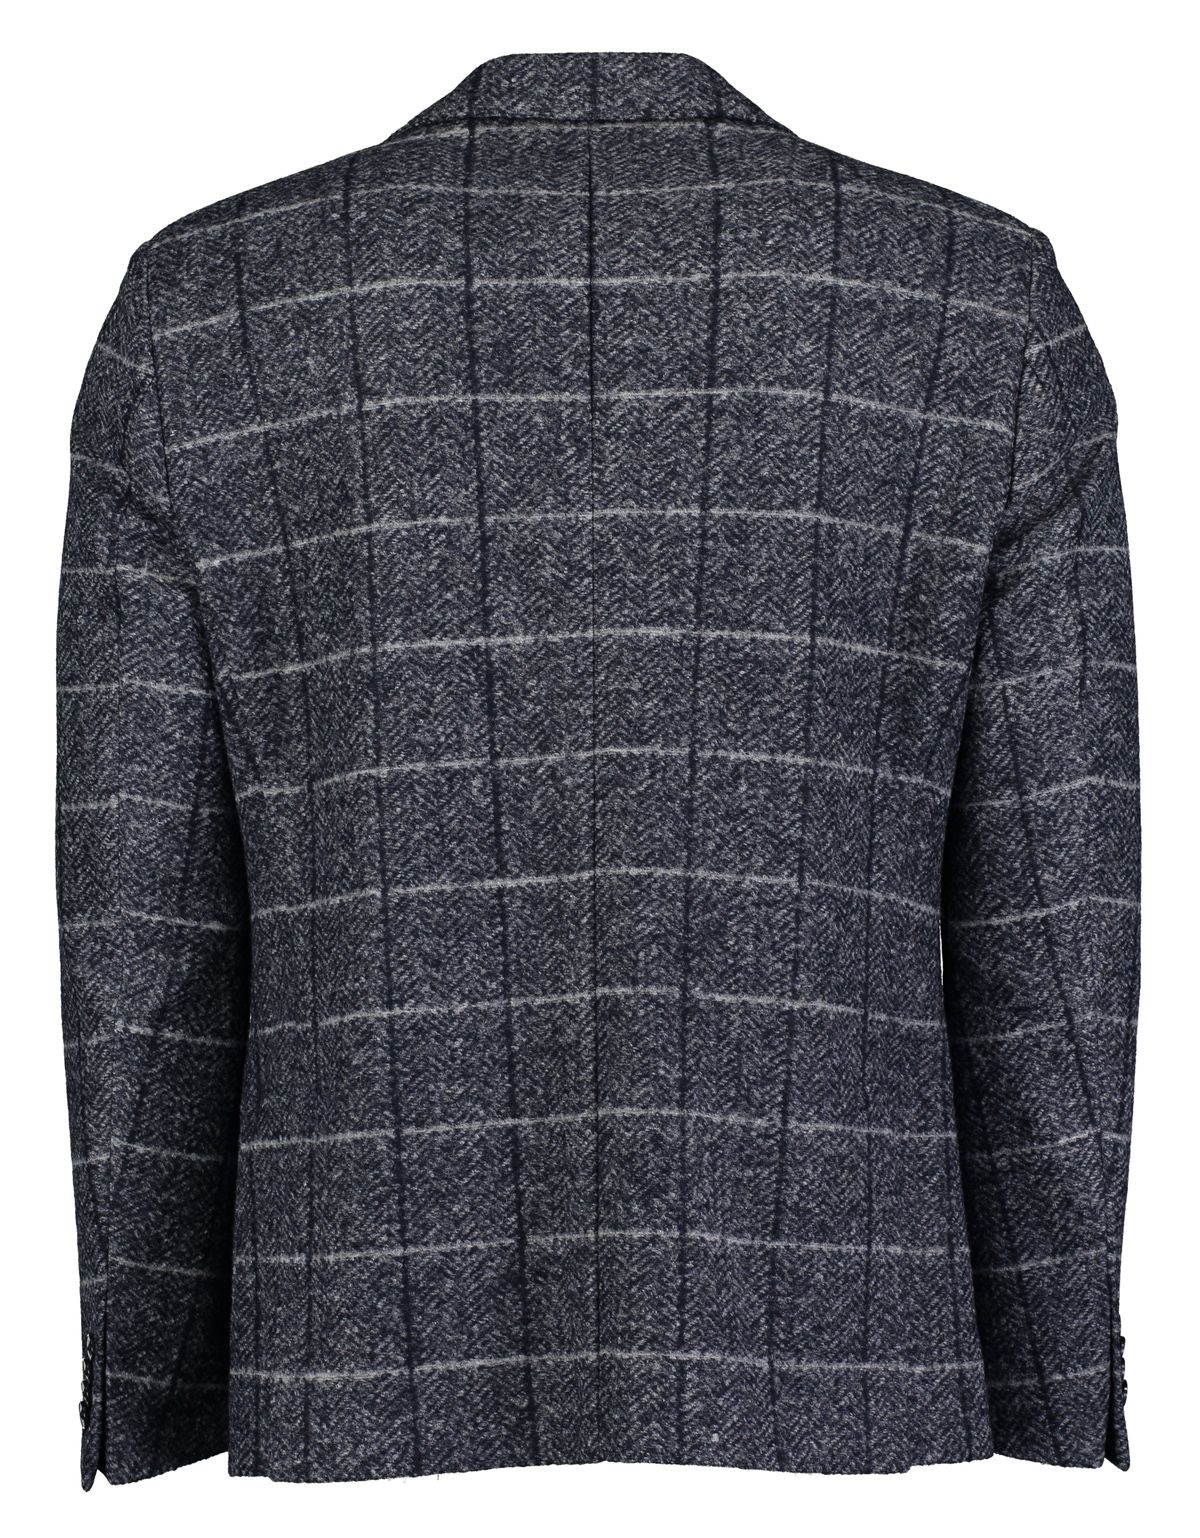 Пиджак мужской из шерсти в клетку Roy Robson приталенный | купить в интернет-магазине Olymp-Men